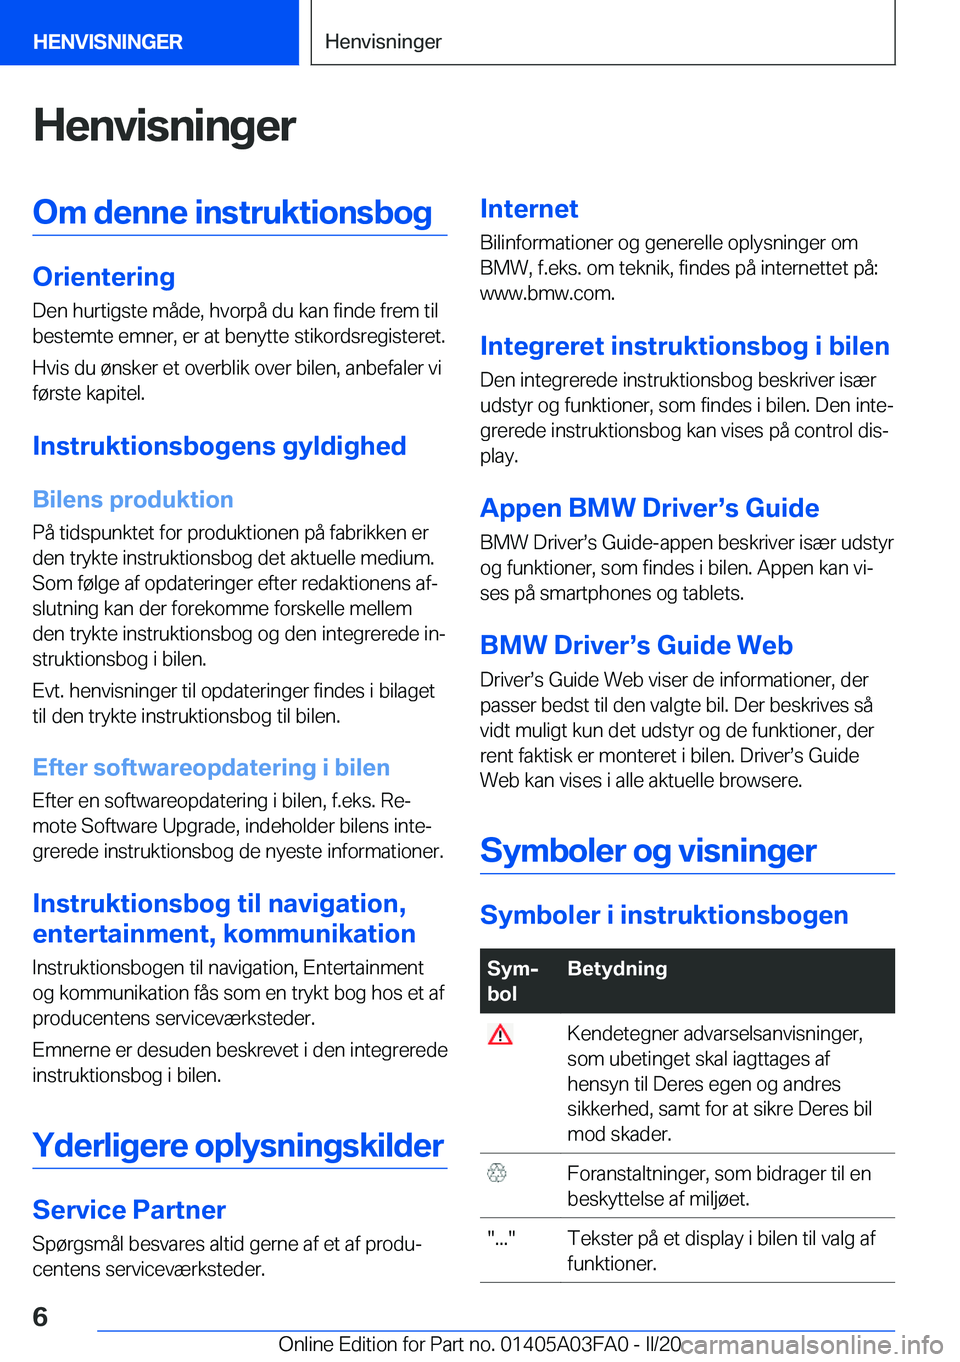 BMW 3 SERIES 2020  InstruktionsbØger (in Danish) �H�e�n�v�i�s�n�i�n�g�e�r�O�m��d�e�n�n�e��i�n�s�t�r�u�k�t�i�o�n�s�b�o�g
�O�r�i�e�n�t�e�r�i�n�g�D�e�n��h�u�r�t�i�g�s�t�e��m�å�d�e�,��h�v�o�r�p�å��d�u��k�a�n��f�i�n�d�e��f�r�e�m��t�i�l
�b�e�s